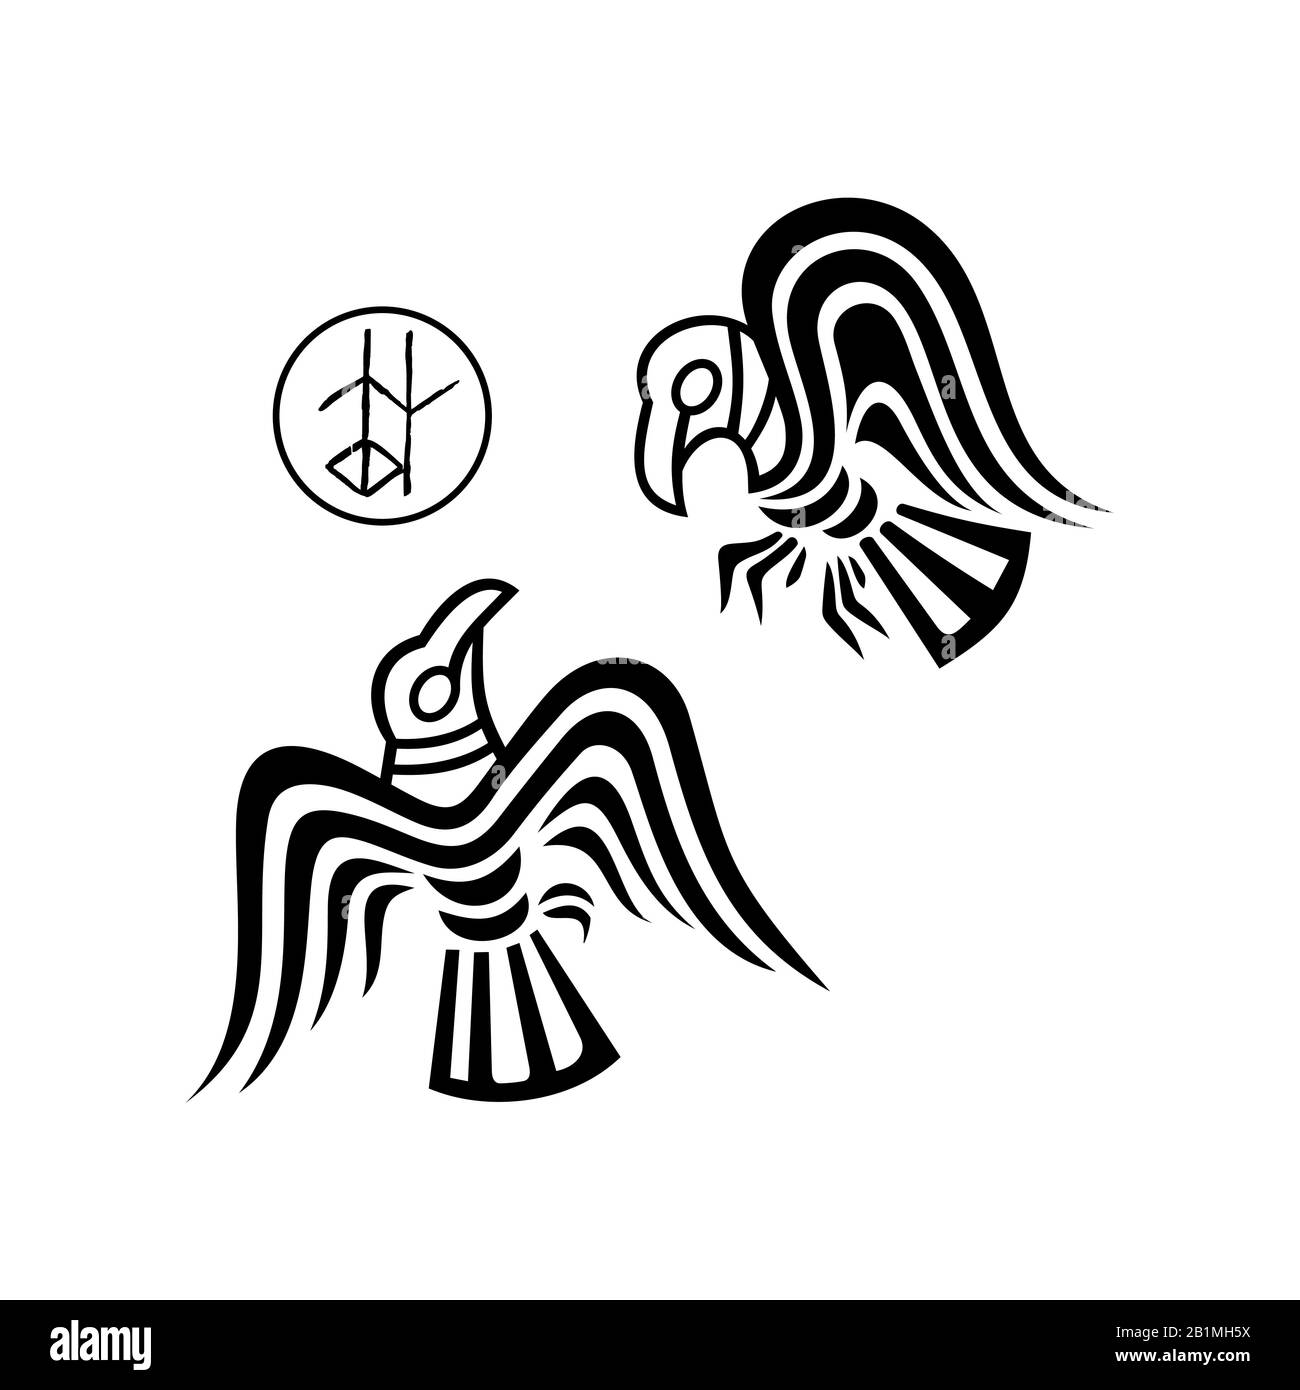 Odin's ravens: huginn and muninn Stock Vector Image & Art - Alamy